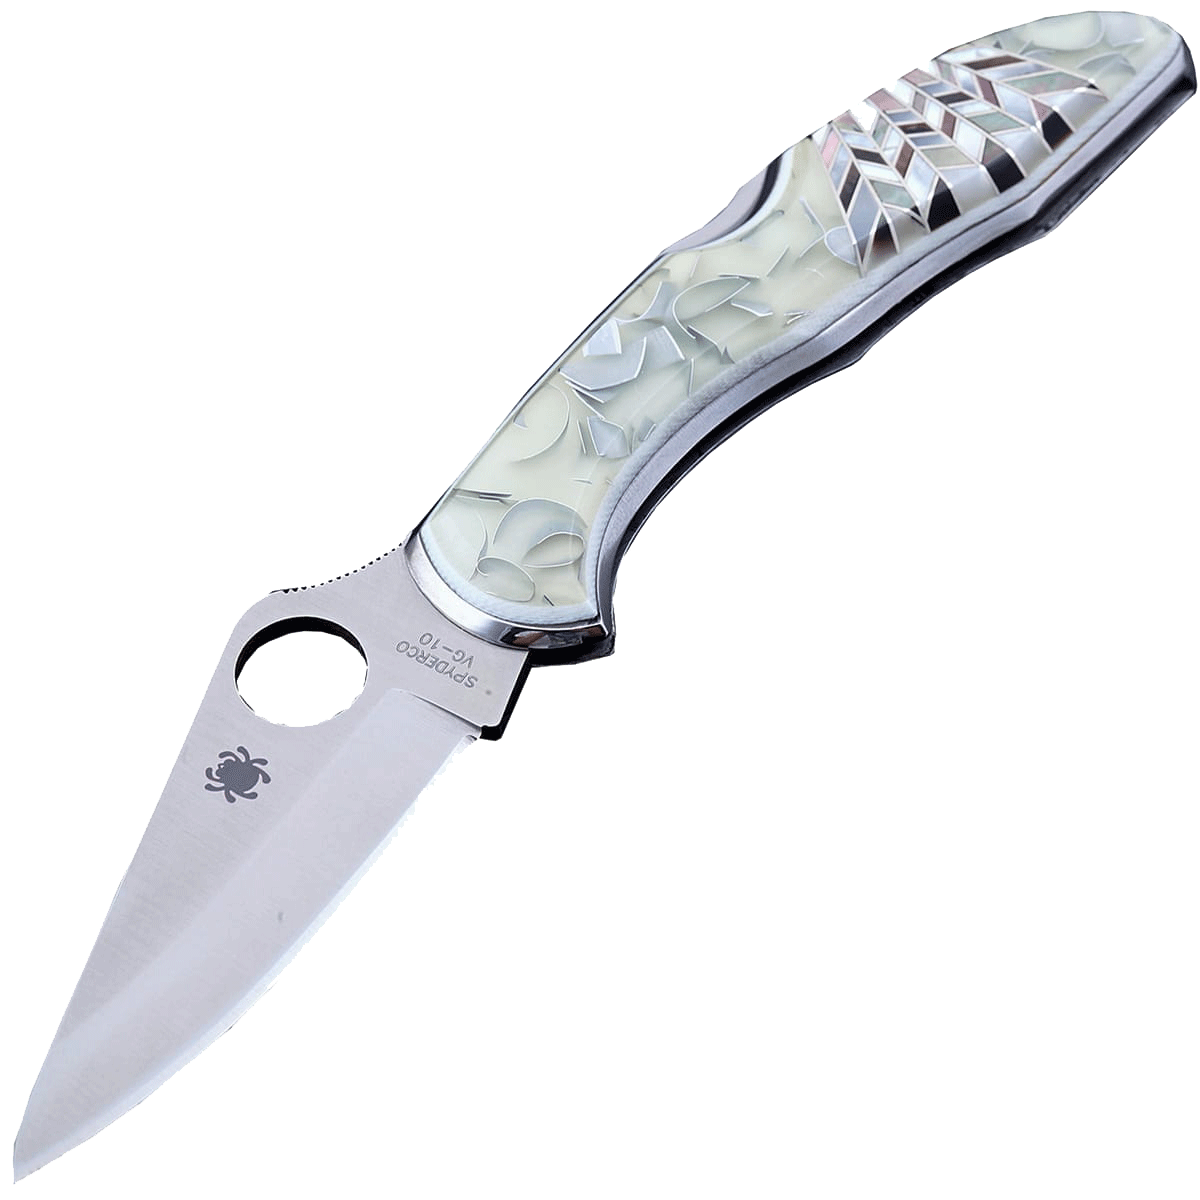 Складной нож Santa Fe Spyderco Delica, сталь VG-10, рукоять сталь с накладкой из зуба акрила/перламутра